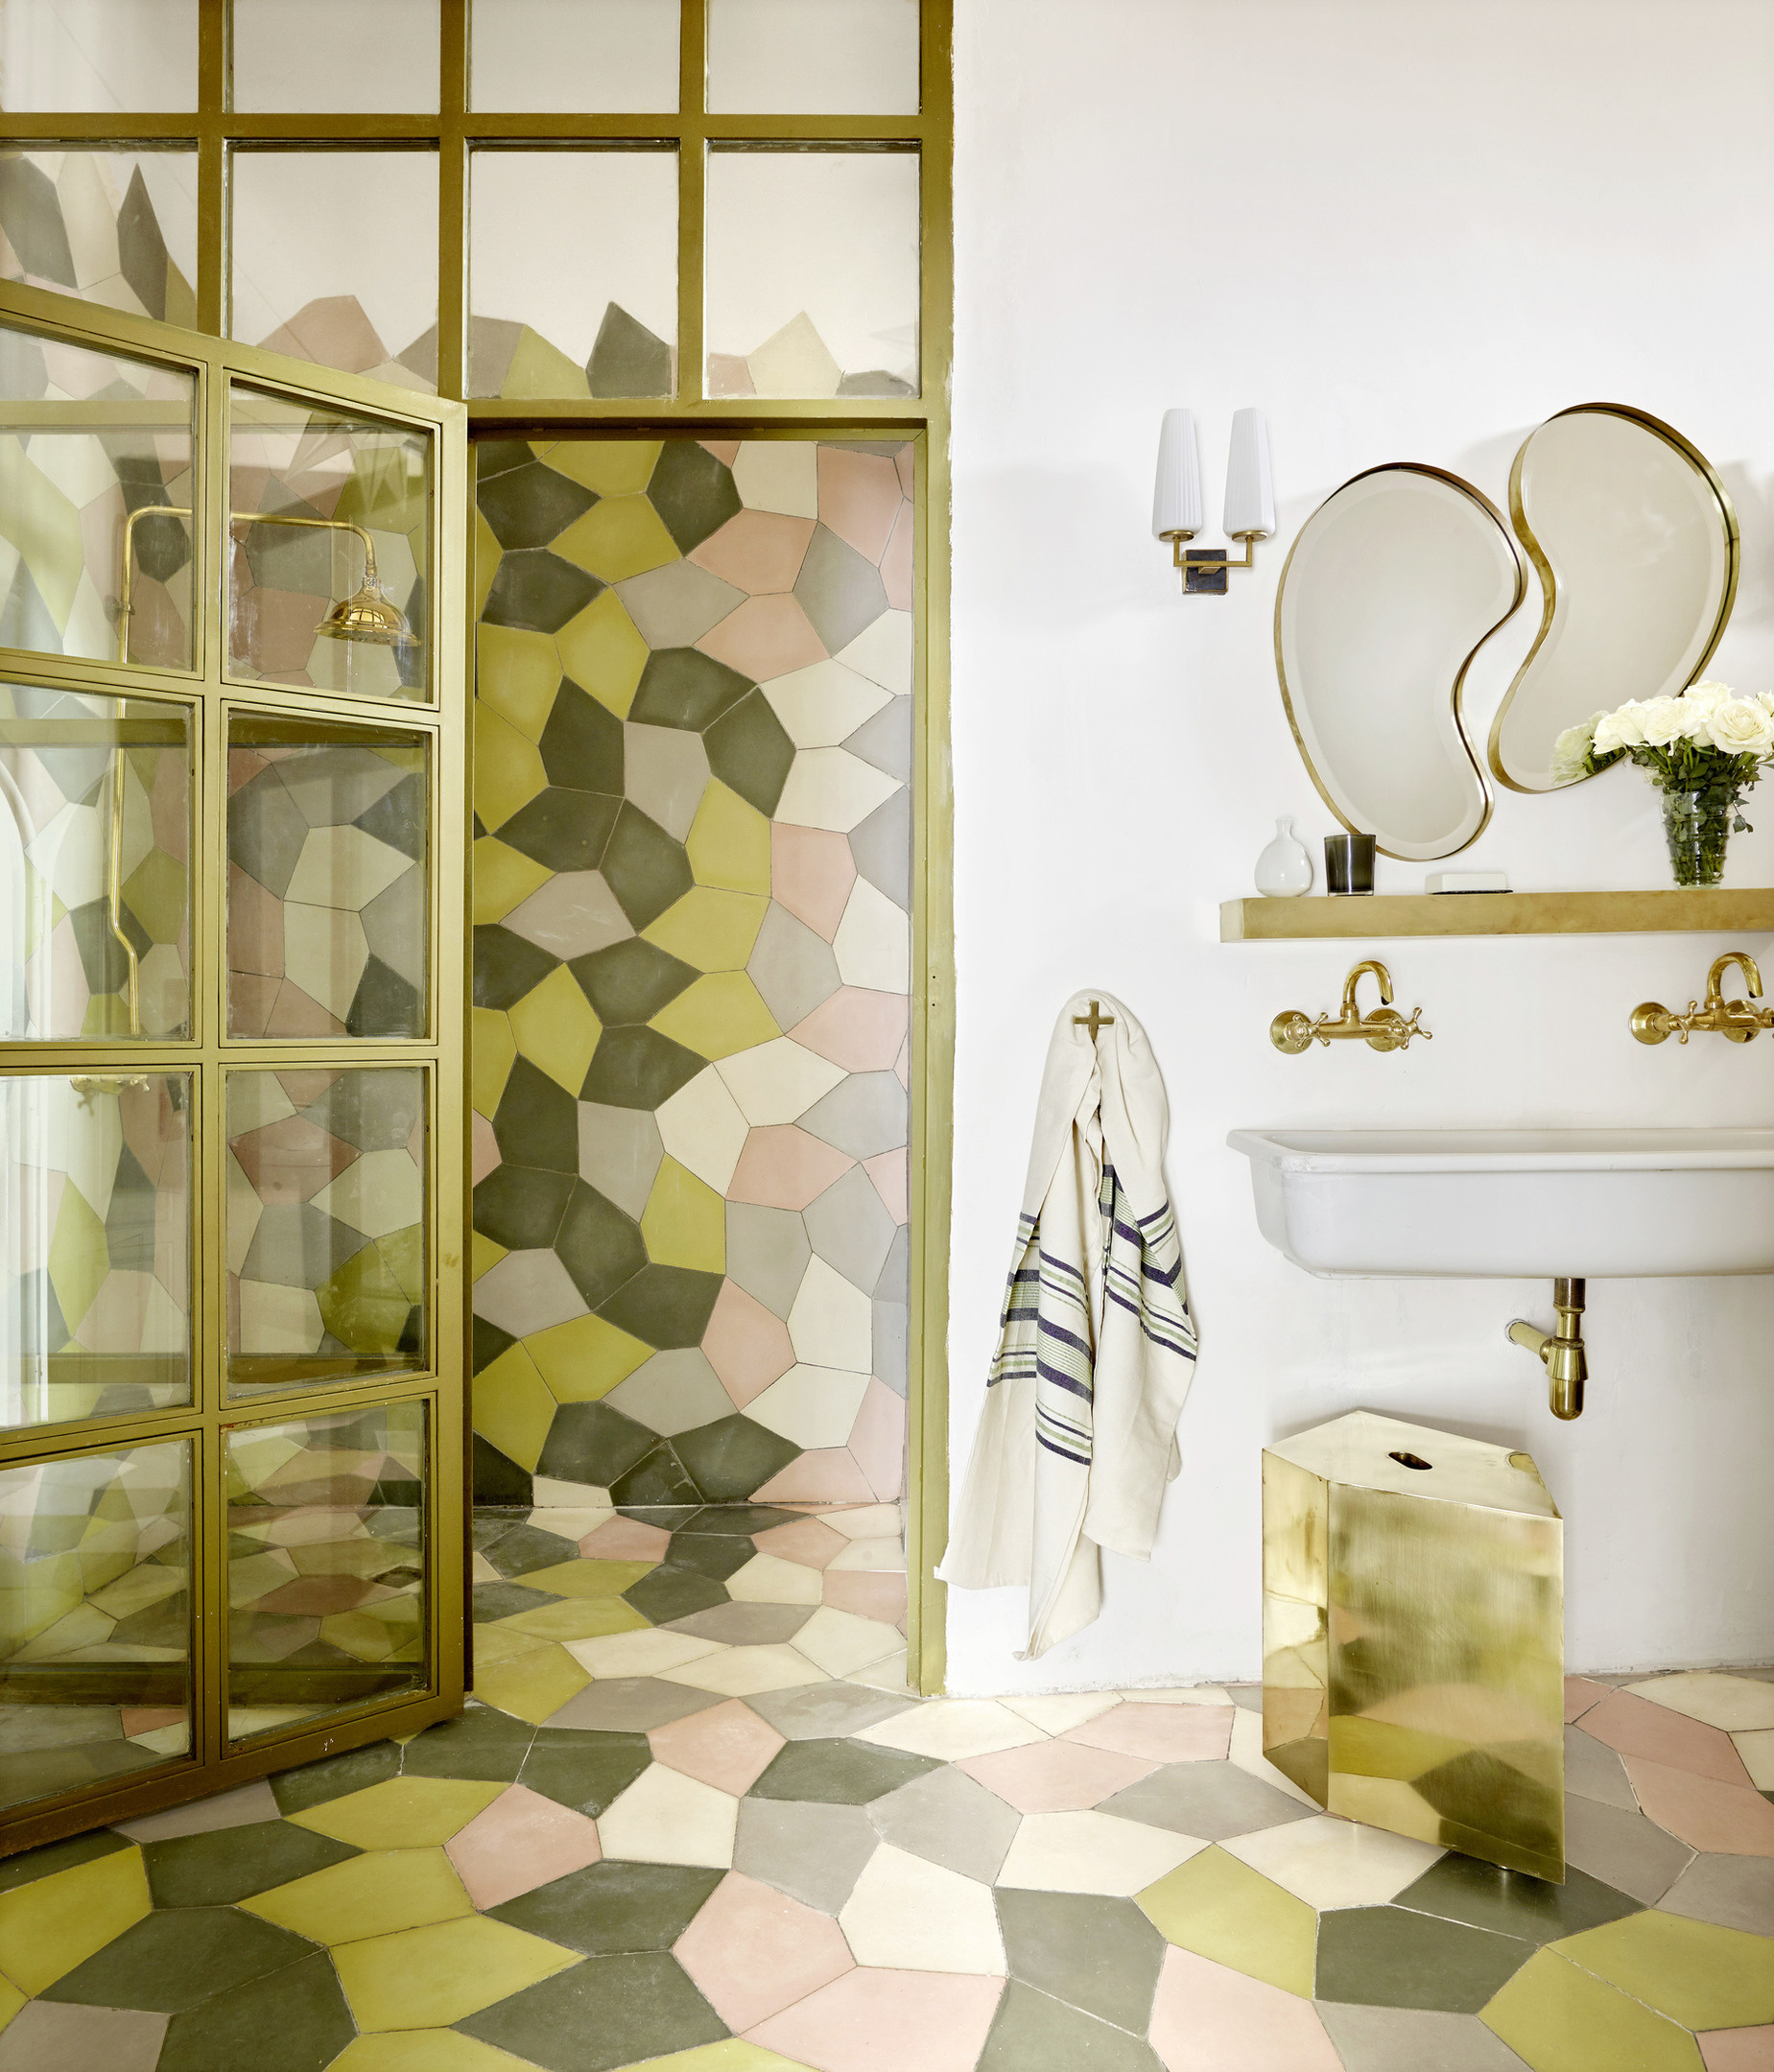 Sự ghép nối những viên gạch ốp lát tươi tắn, đa sắc màu tạo nên một bức tranh sinh động cho phòng tắm. Thêm vào những chi tiết vòi hoa sen, viền khung gương, vòi rửa kim loại mạ vàng đồng càng thêm sang trọng.